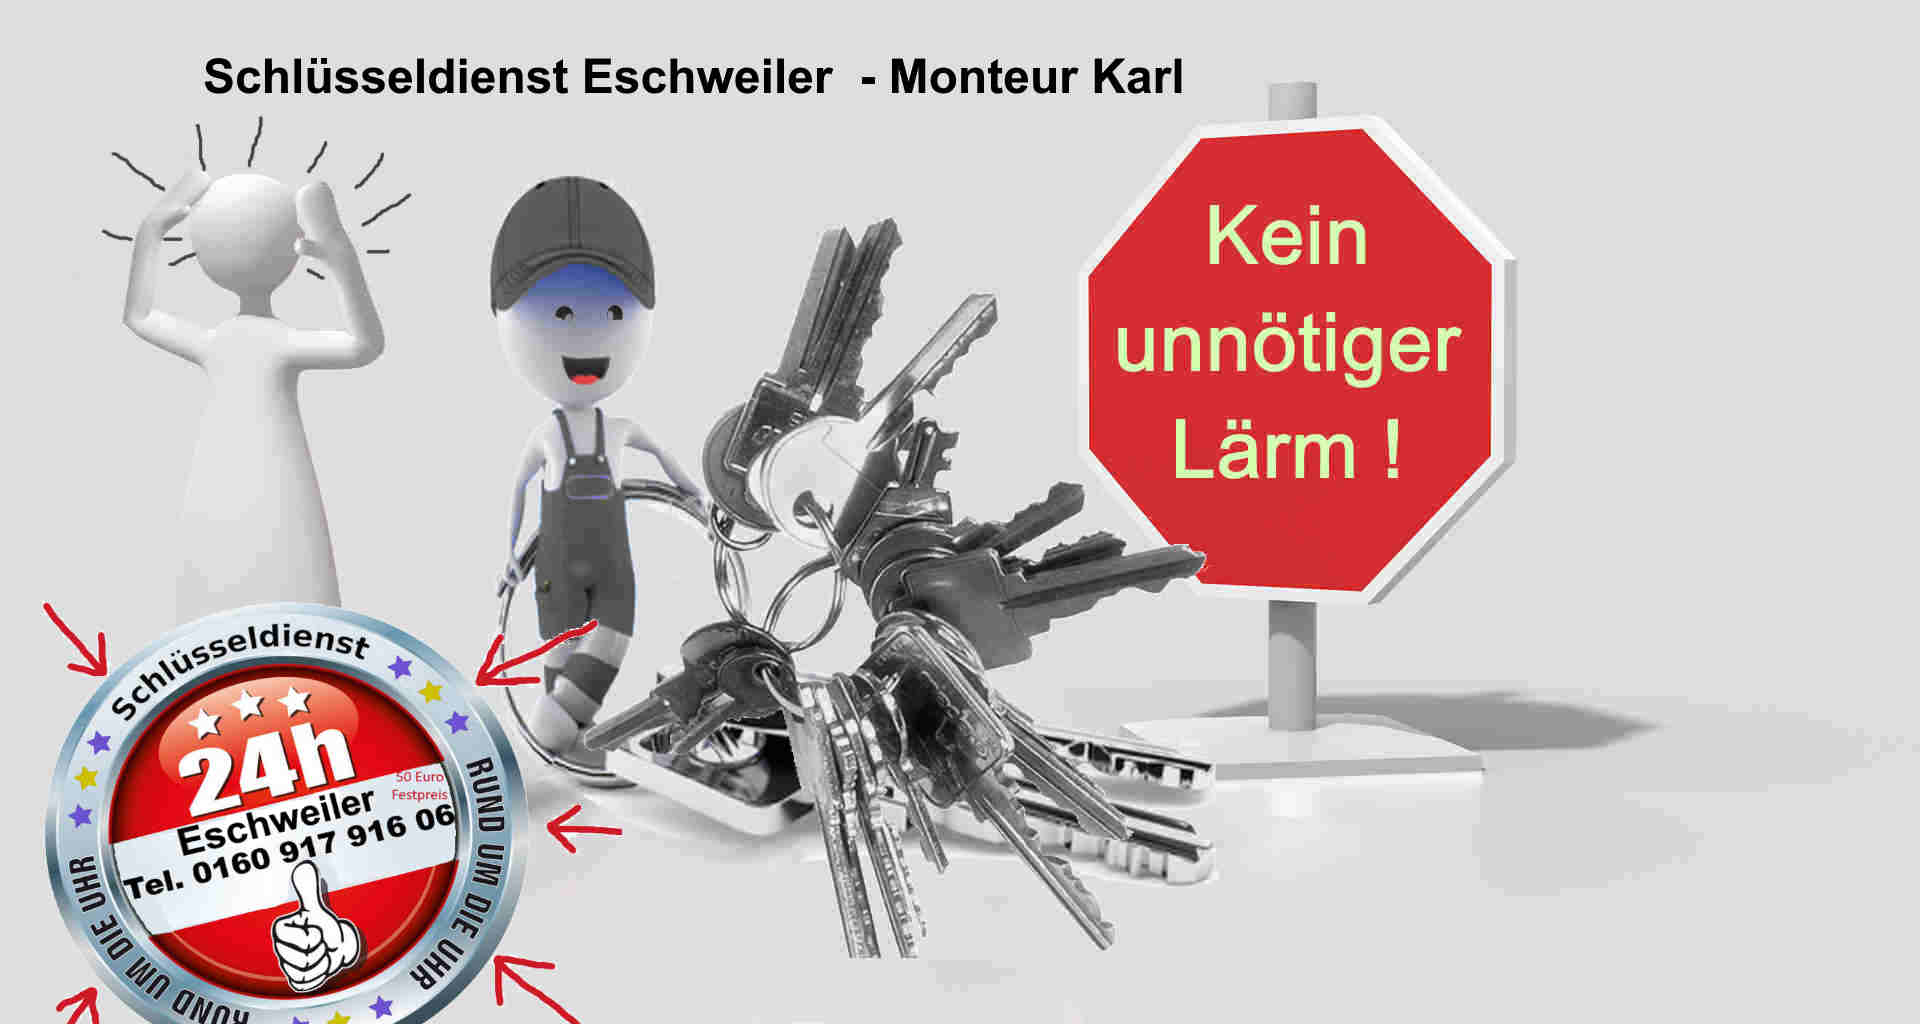 Schlüsseldienst Weisweiler - Stadt Eschweiler - kein Lärm - Tür öffnen fast lautlos - Es geht auch anders !